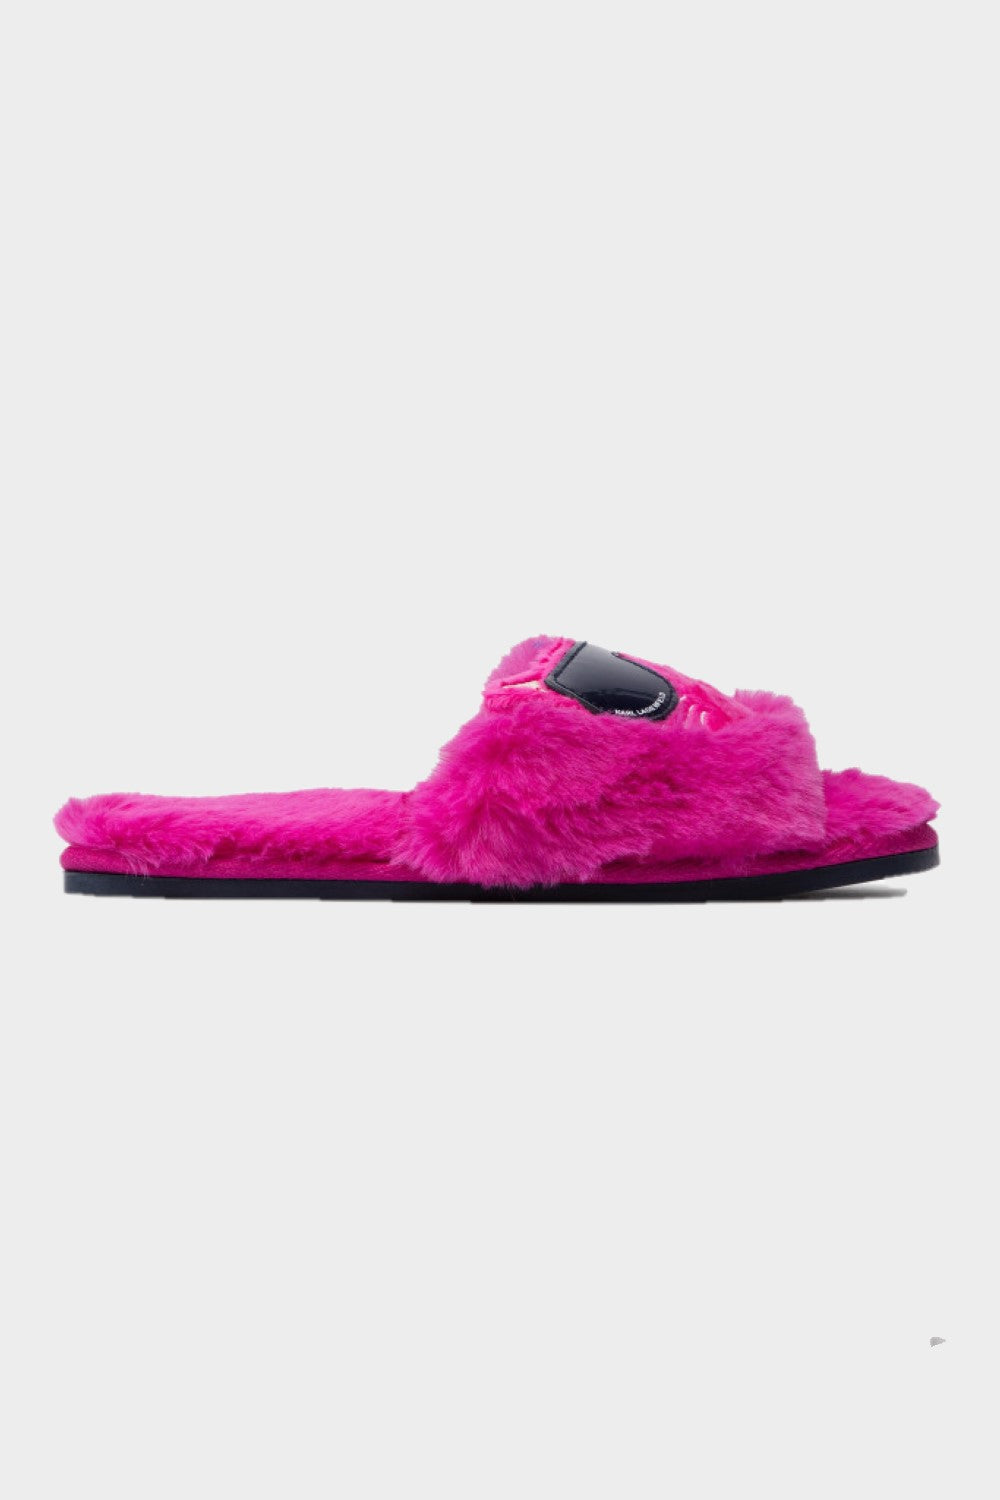 נעלי בית צמר לנשים CHOUPETTE KARL LAGERFELD Vendome online | ונדום .